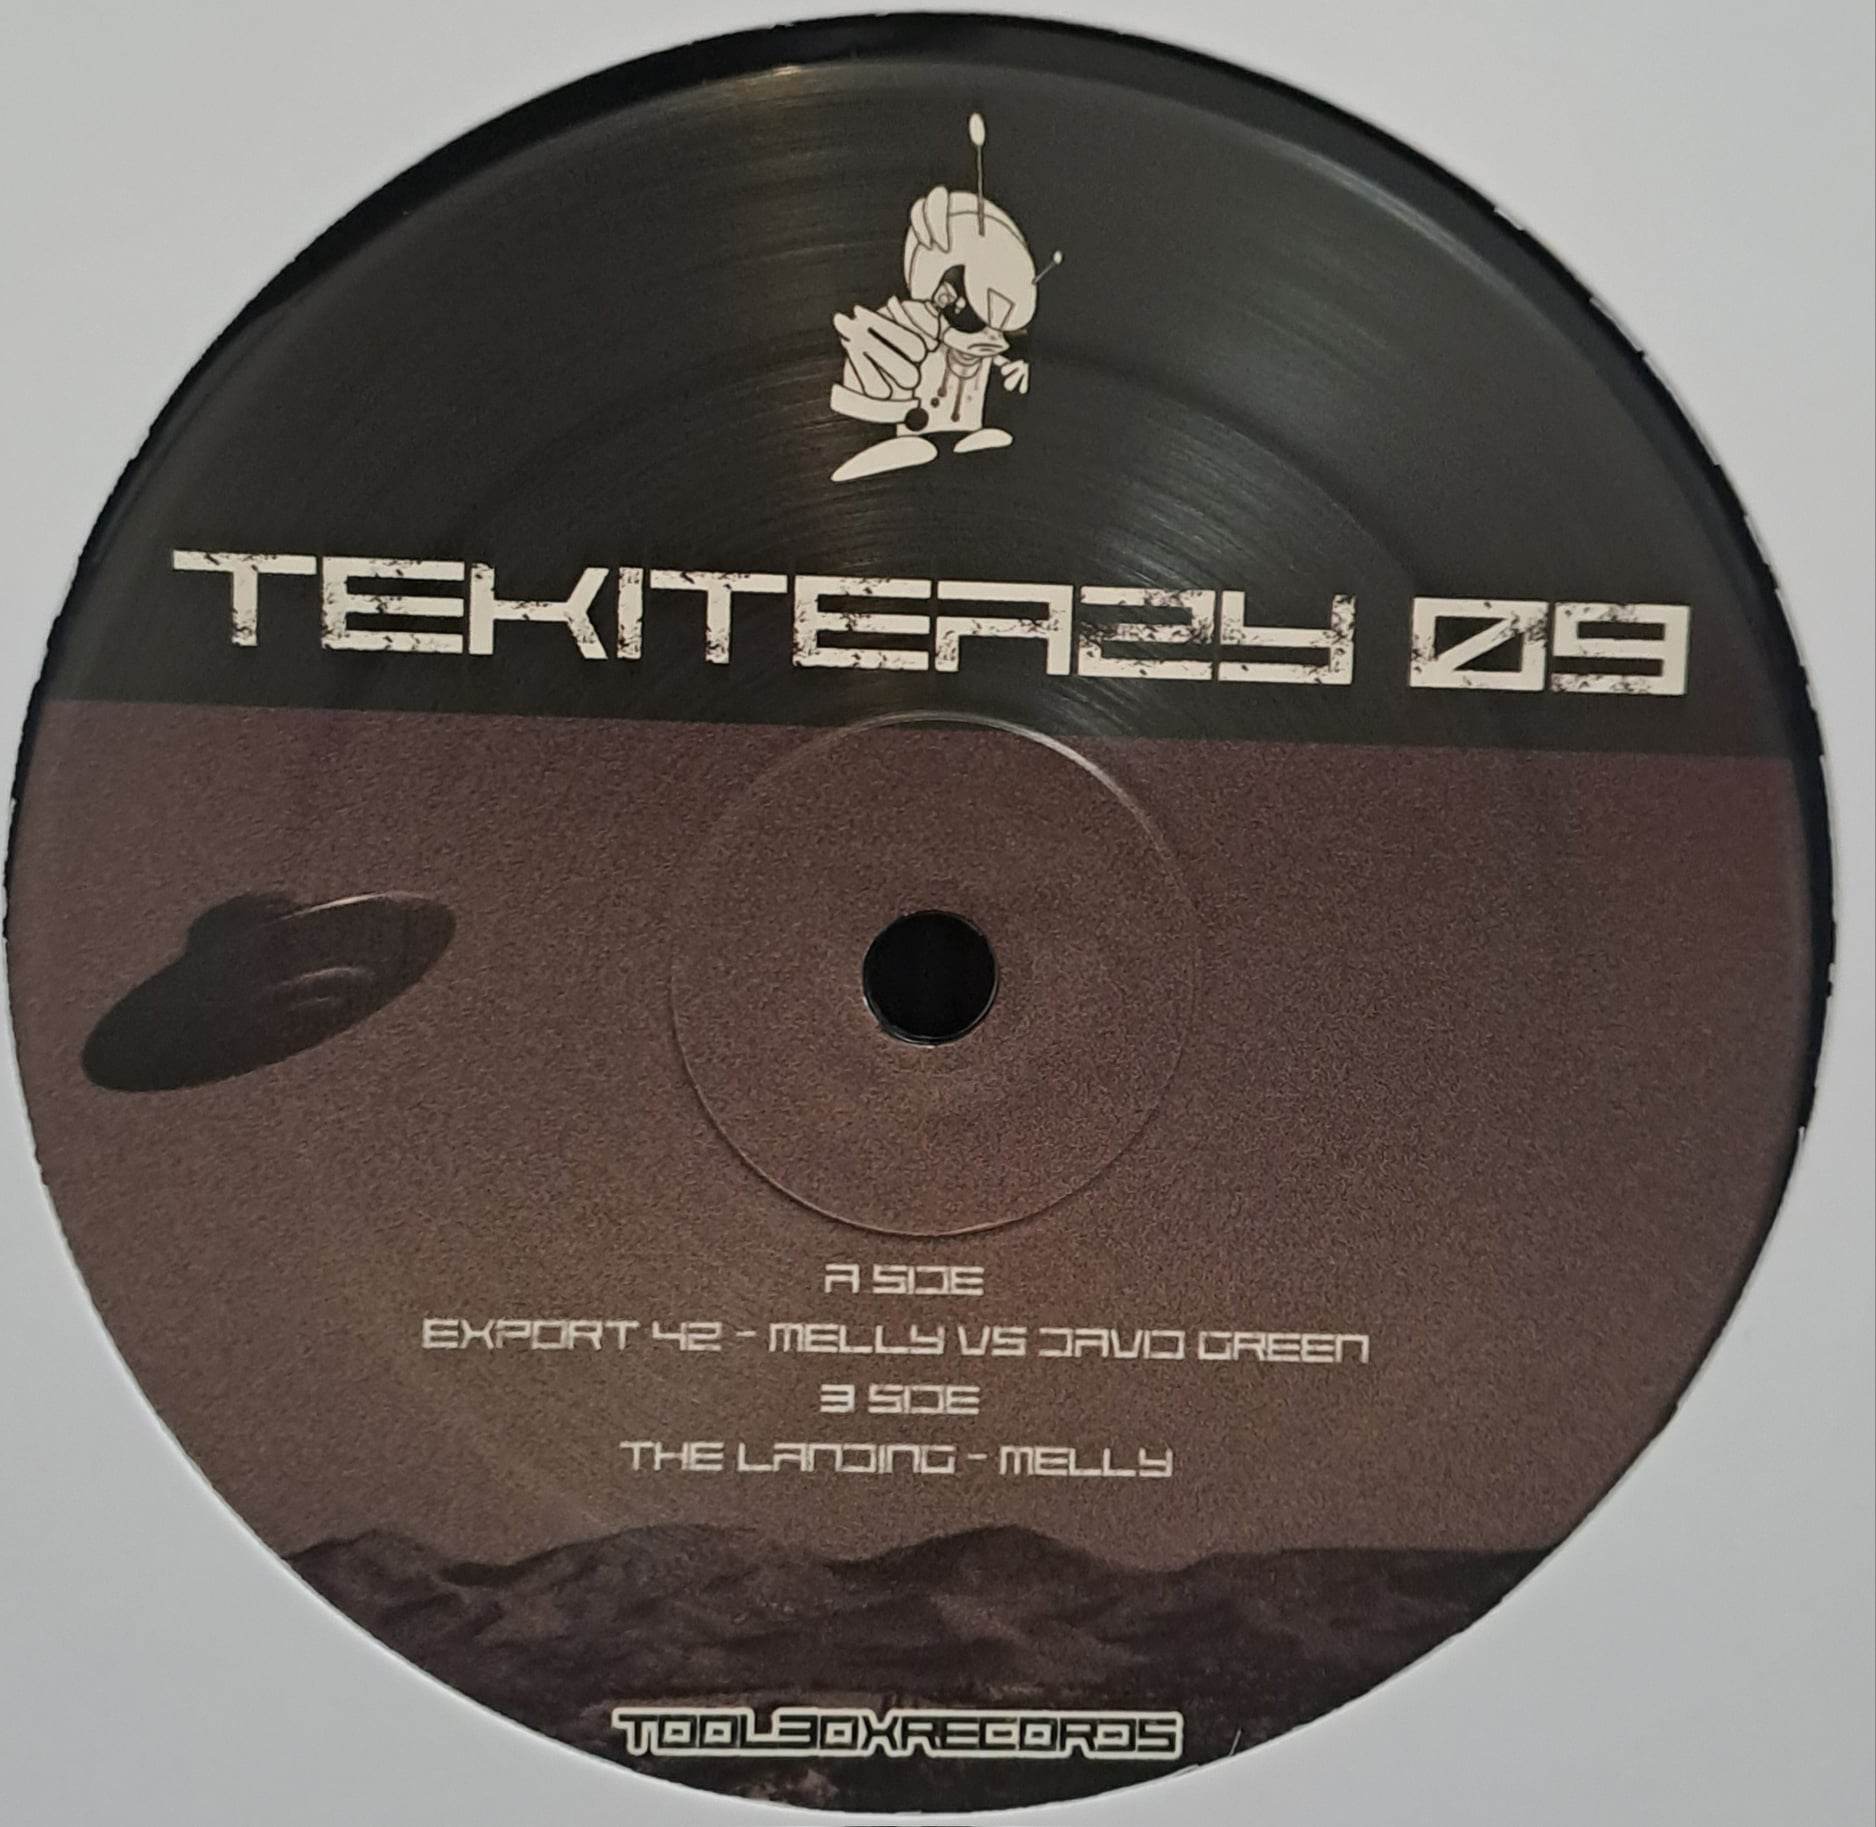 Tekiteazy 09 - vinyle freetekno